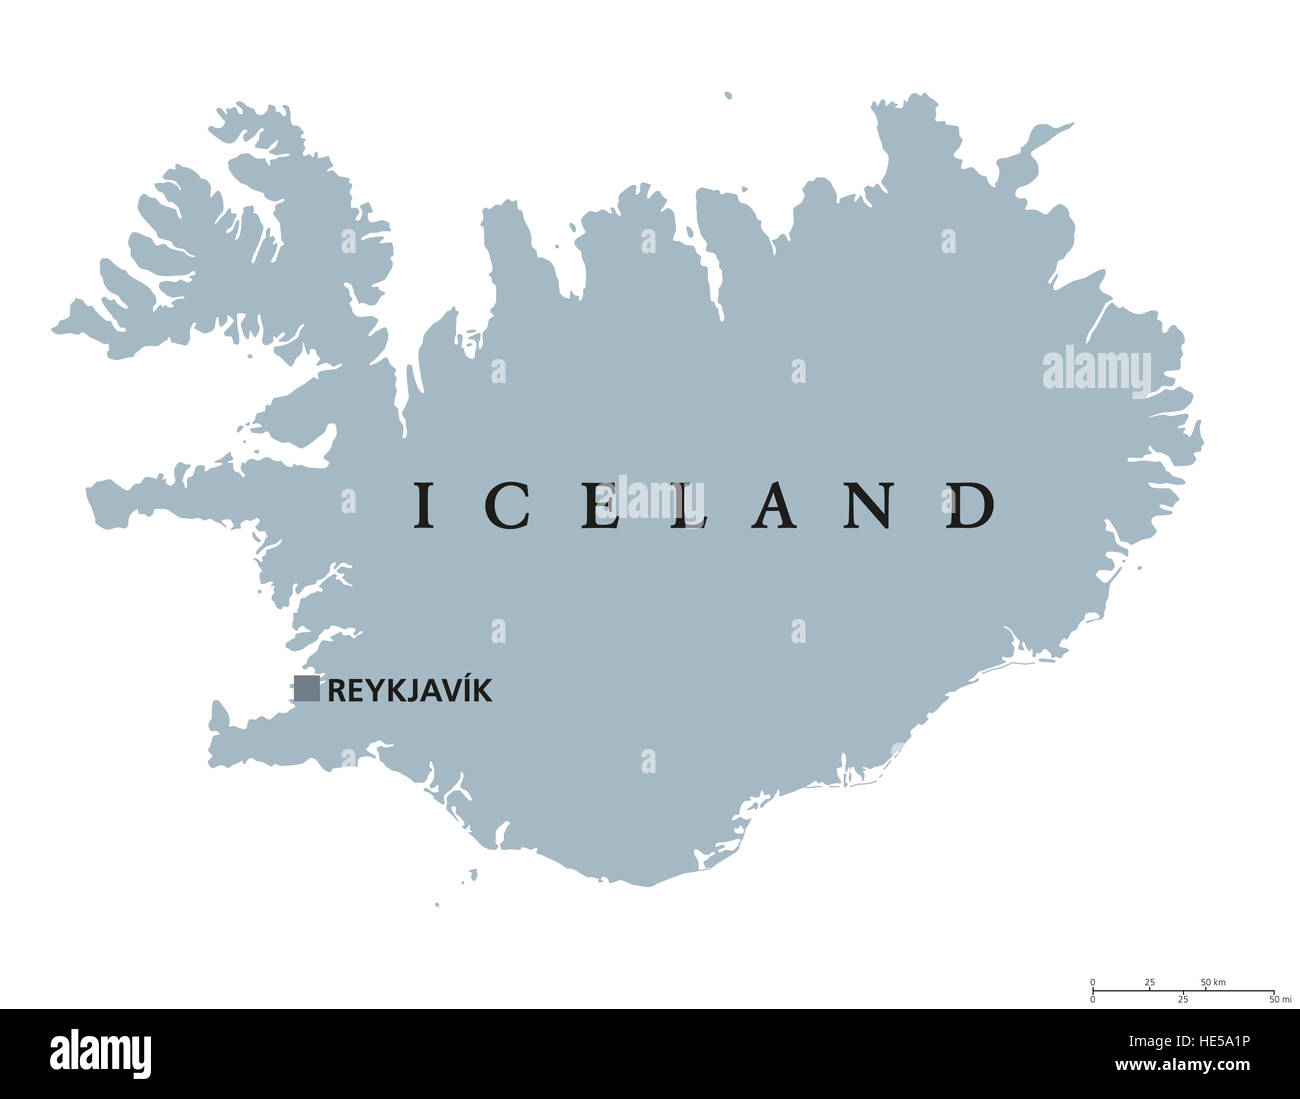 Mapa político con capital de Islandia, Reykjavik. República y país insular nórdicos en Europa y en el norte del Océano Atlántico. Foto de stock